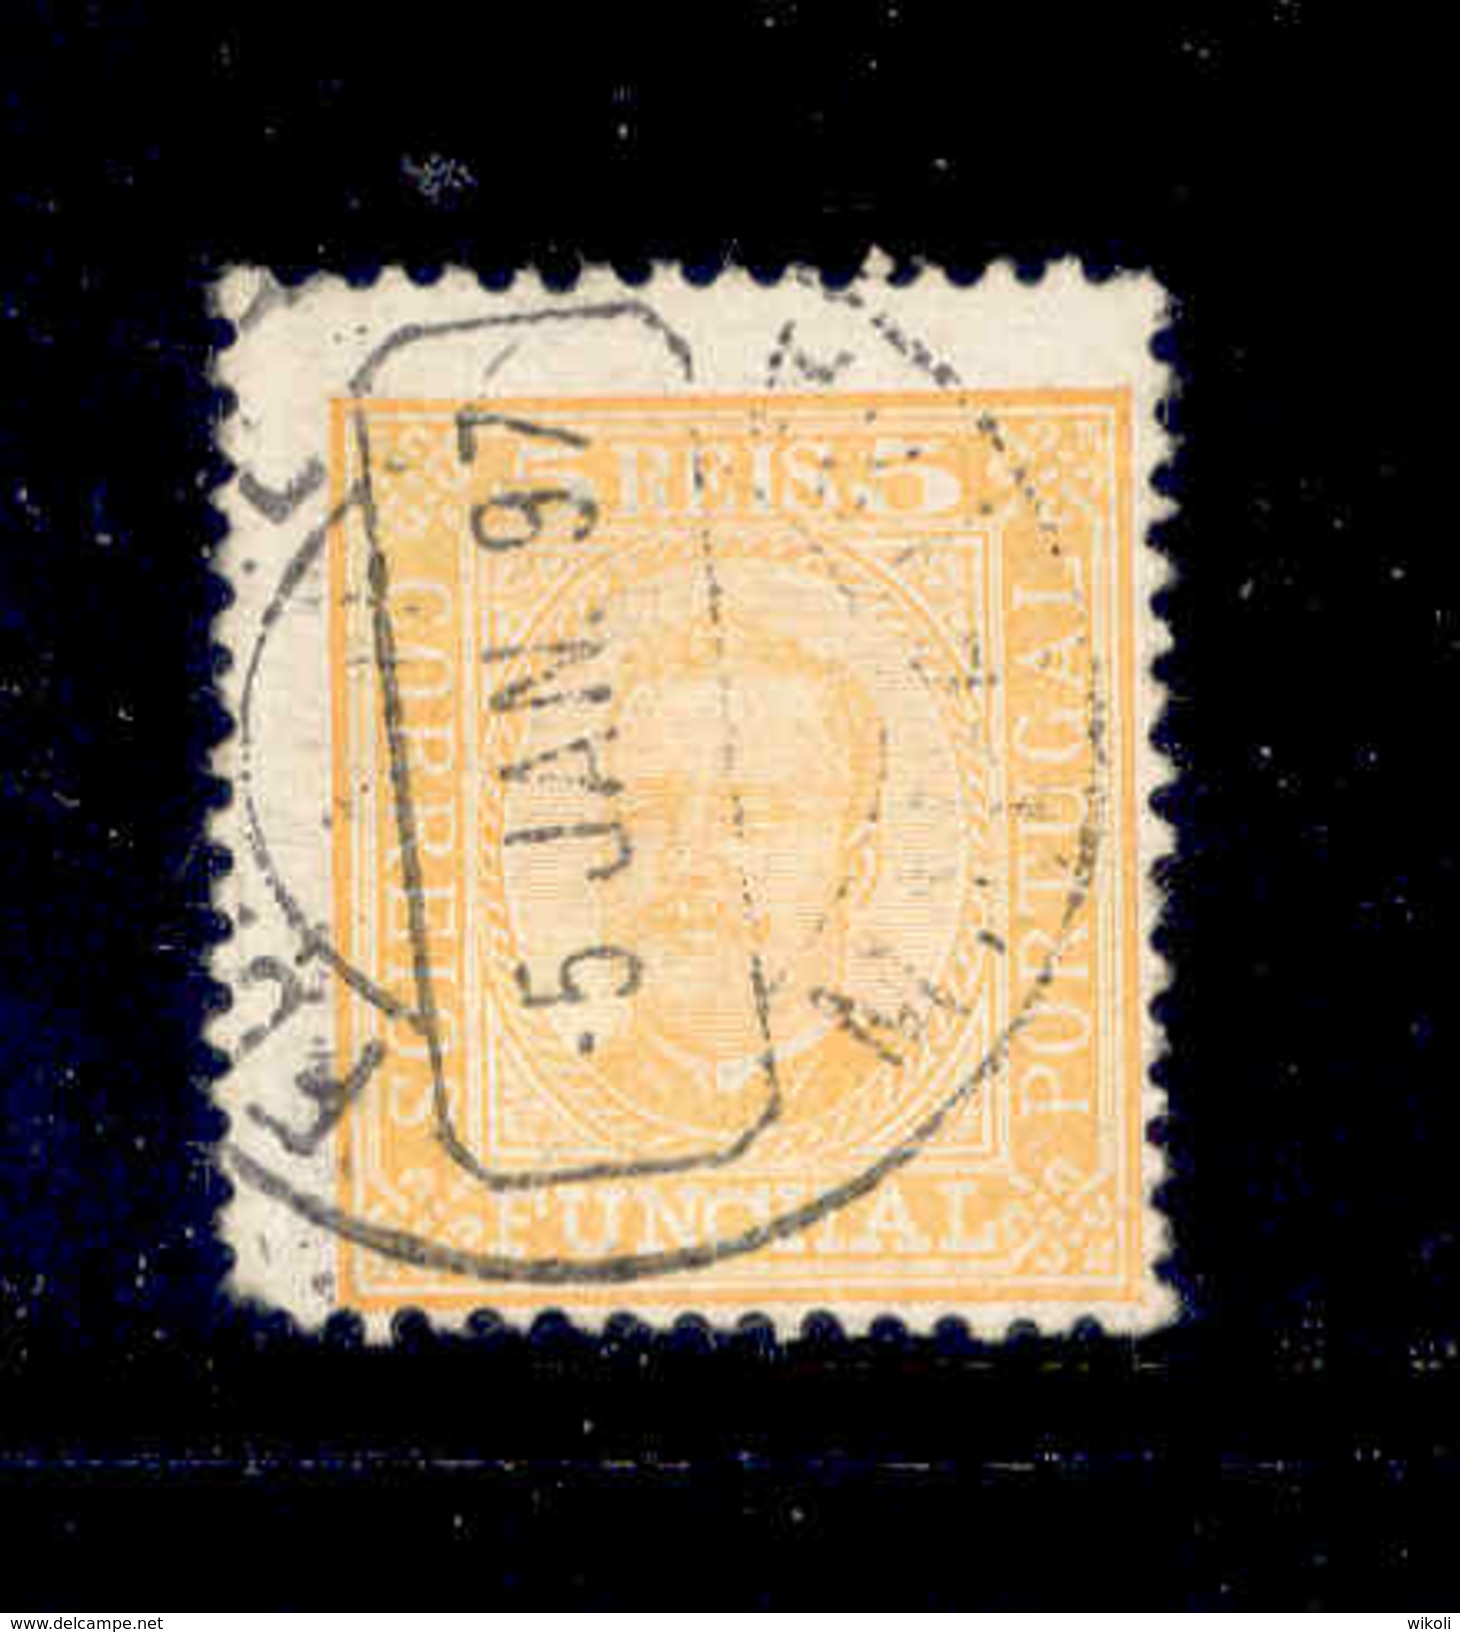 ! ! Funchal - 1892 D. Carlos 05 R (Perf. 11 3/4) - Af. 01 - Used - Funchal